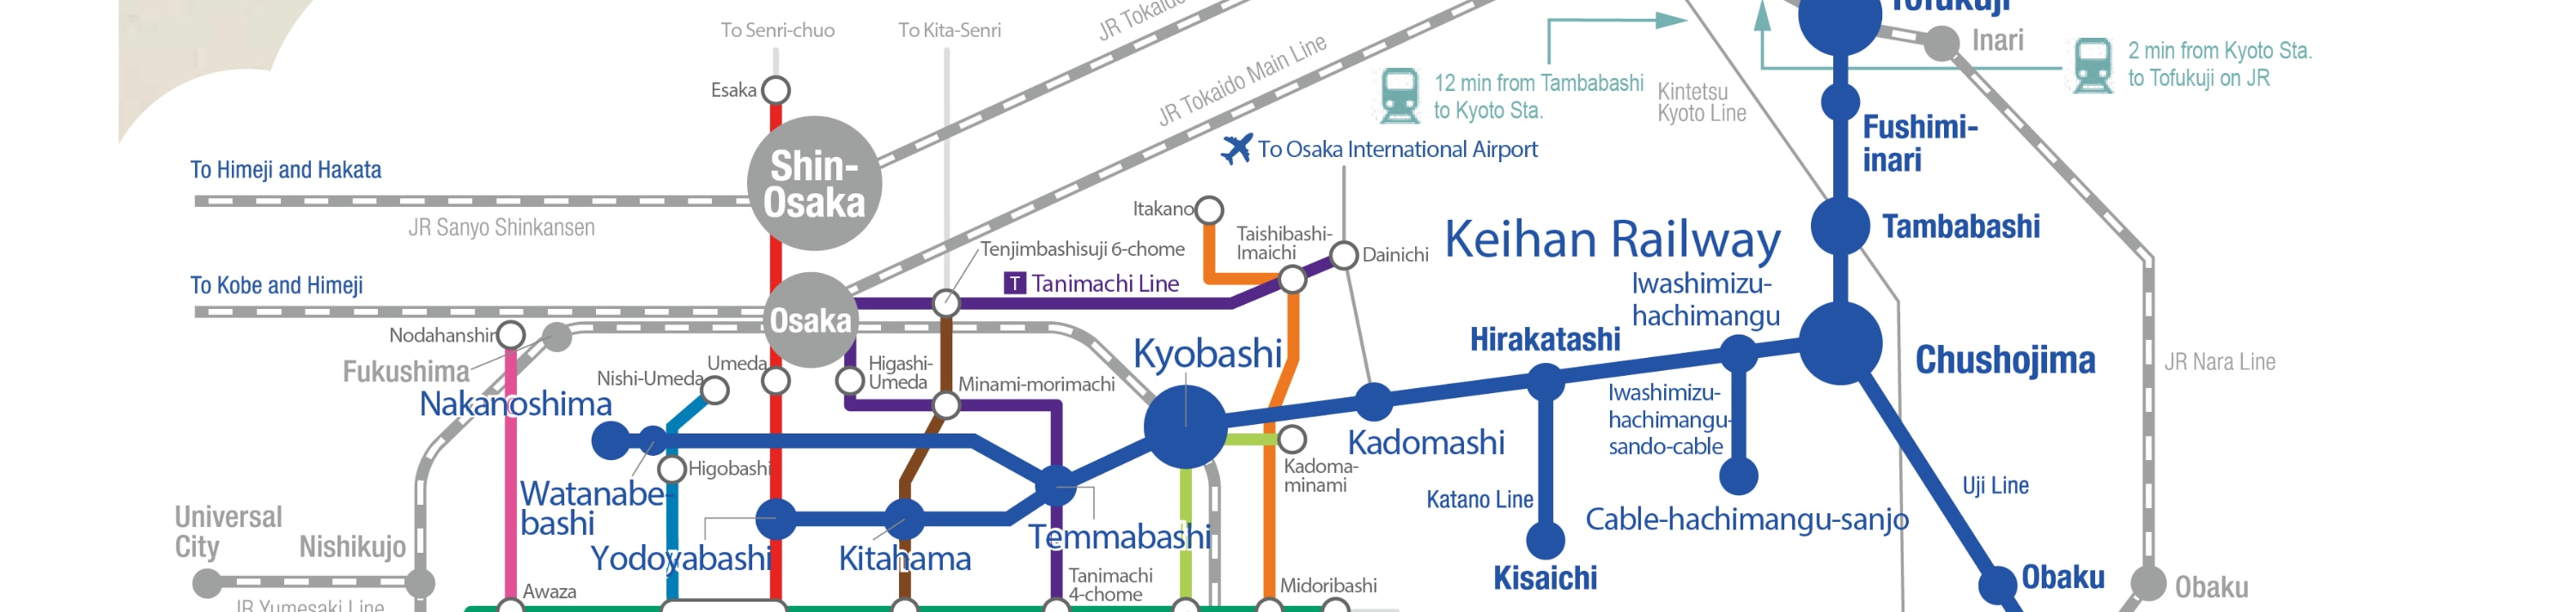 京都大阪觀光一日券／二日券（含大阪地鐵）適用區域